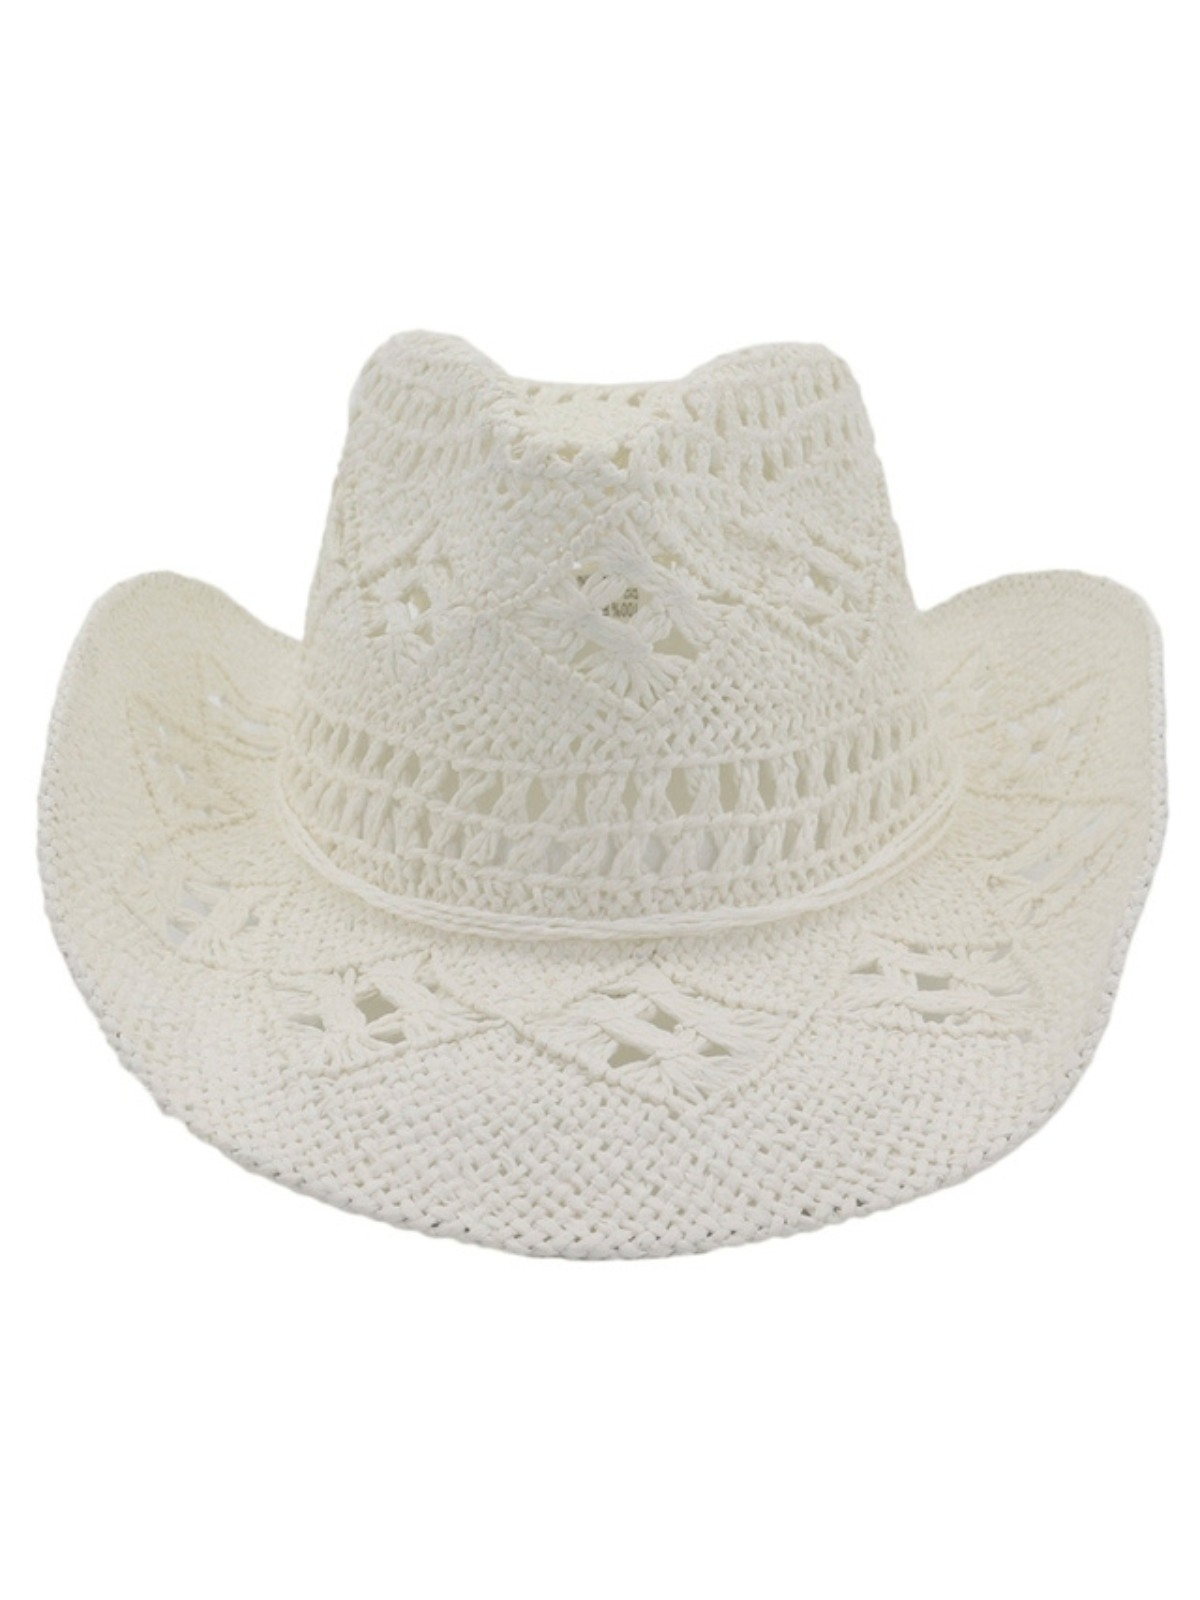 Kids Fashion Accessories | Little Girls White Straw Cowboy Hat